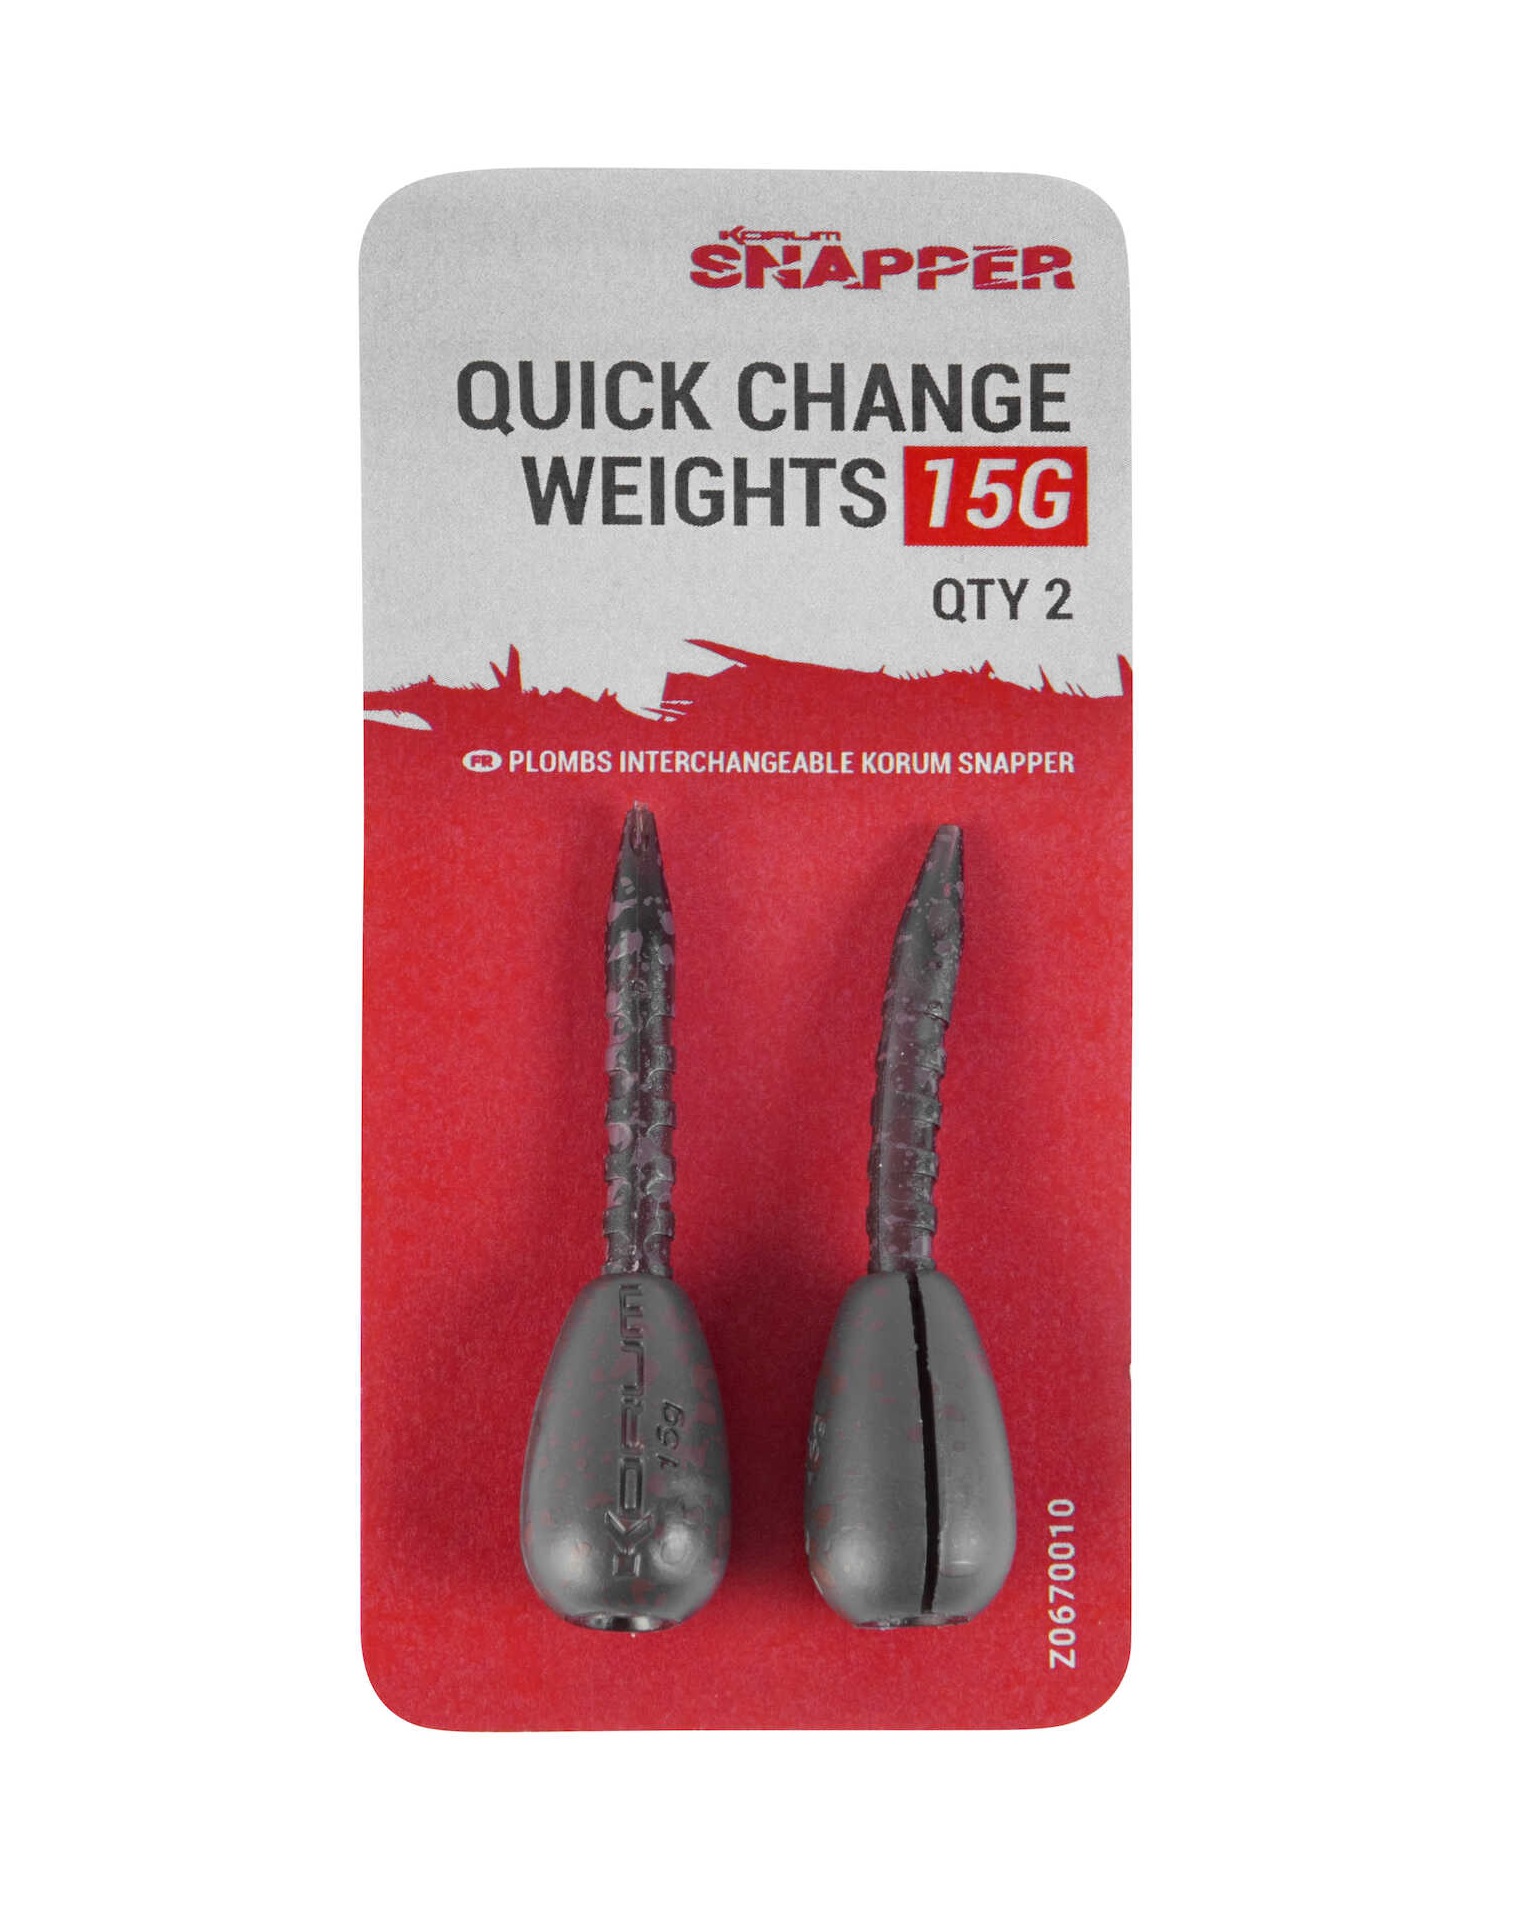 Korum Snapper Quick Change Weights (2 pieces)